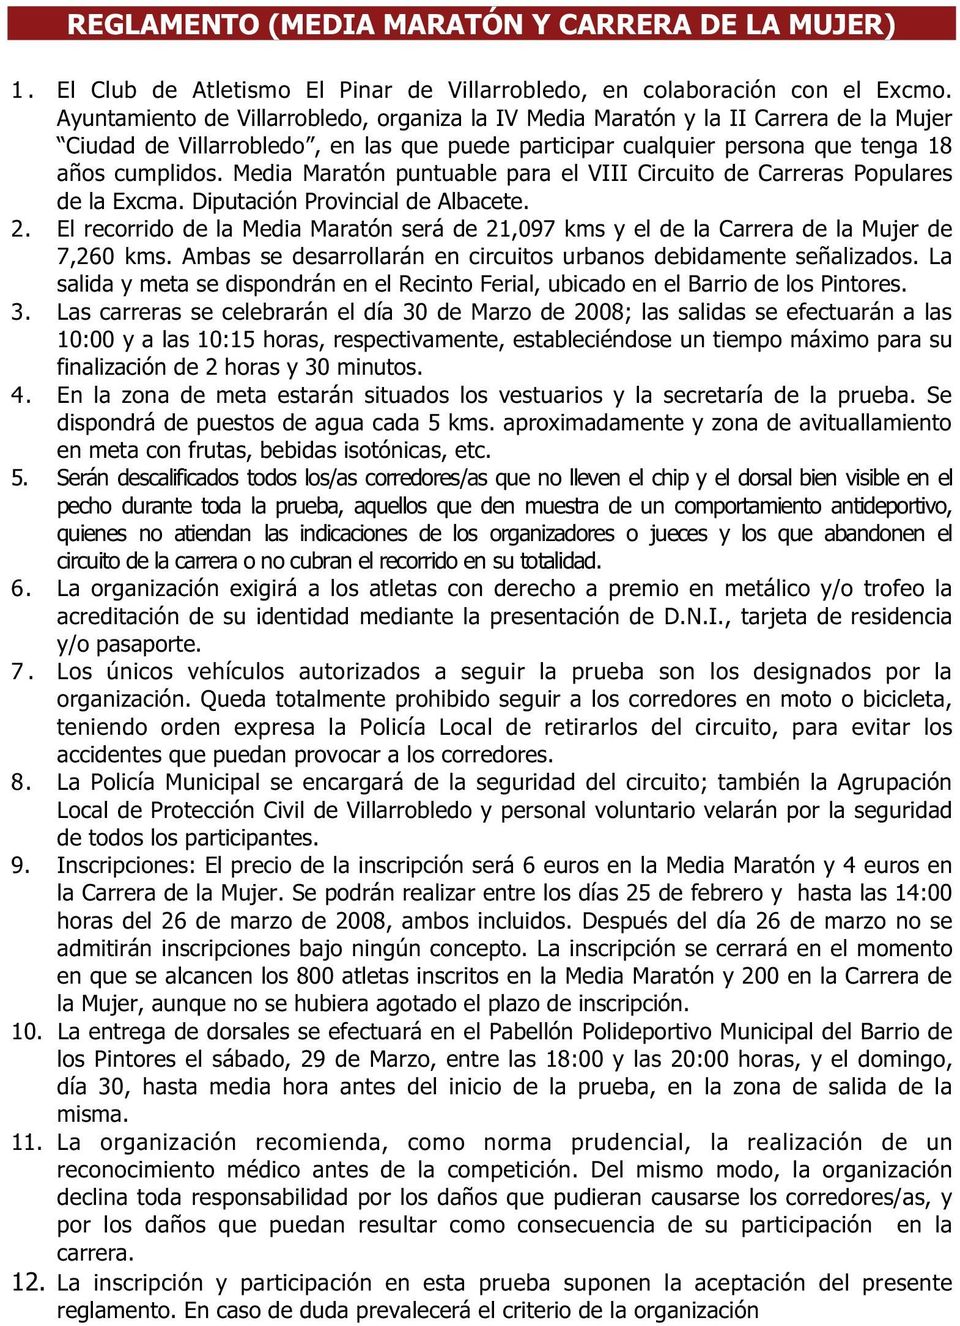 Media Maratón puntuable para el VIII Circuito de Carreras Populares de la Excma. Diputación Provincial de Albacete. 2.